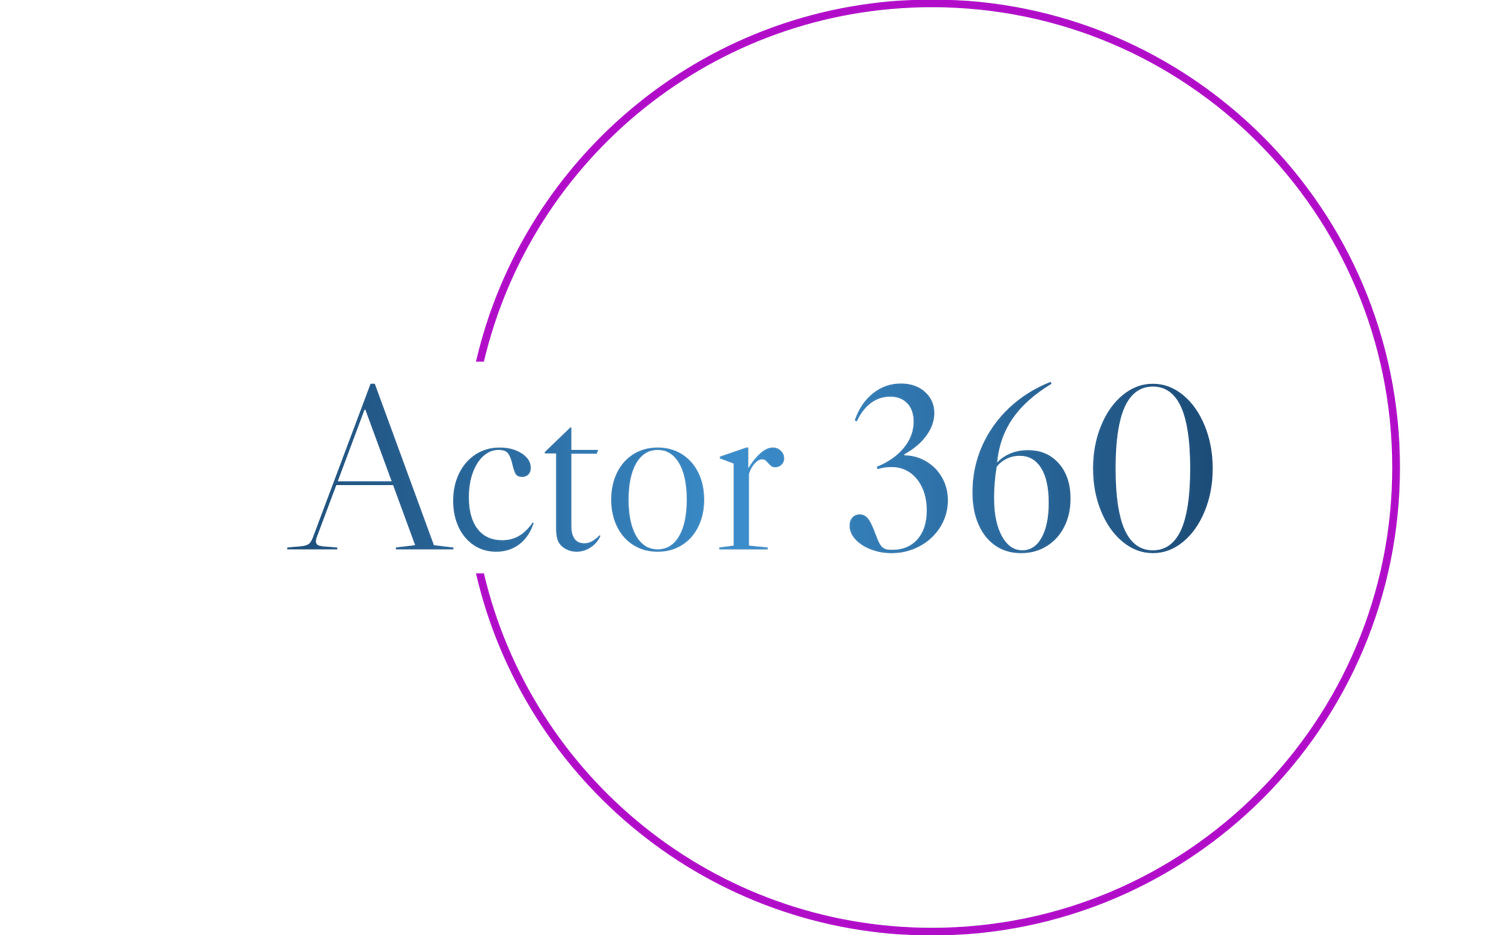 Actor 360 